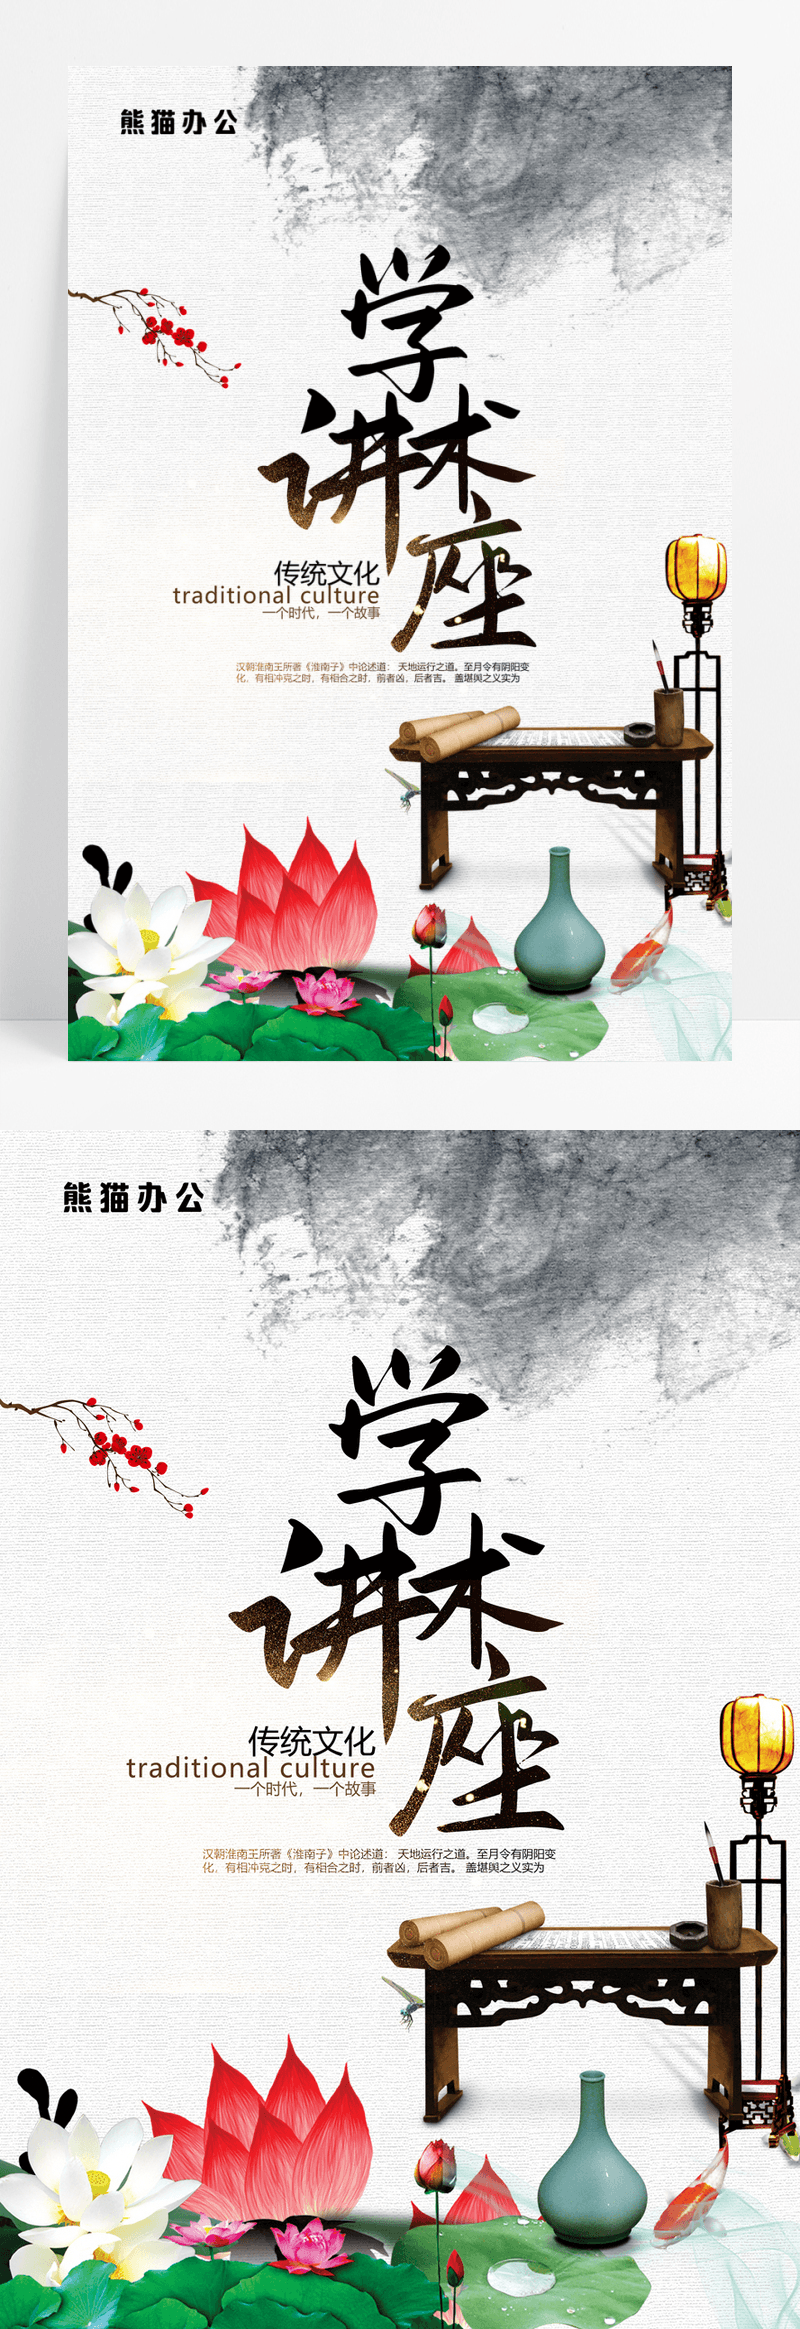  中国风米色文化艺术学术讲座宣传海报